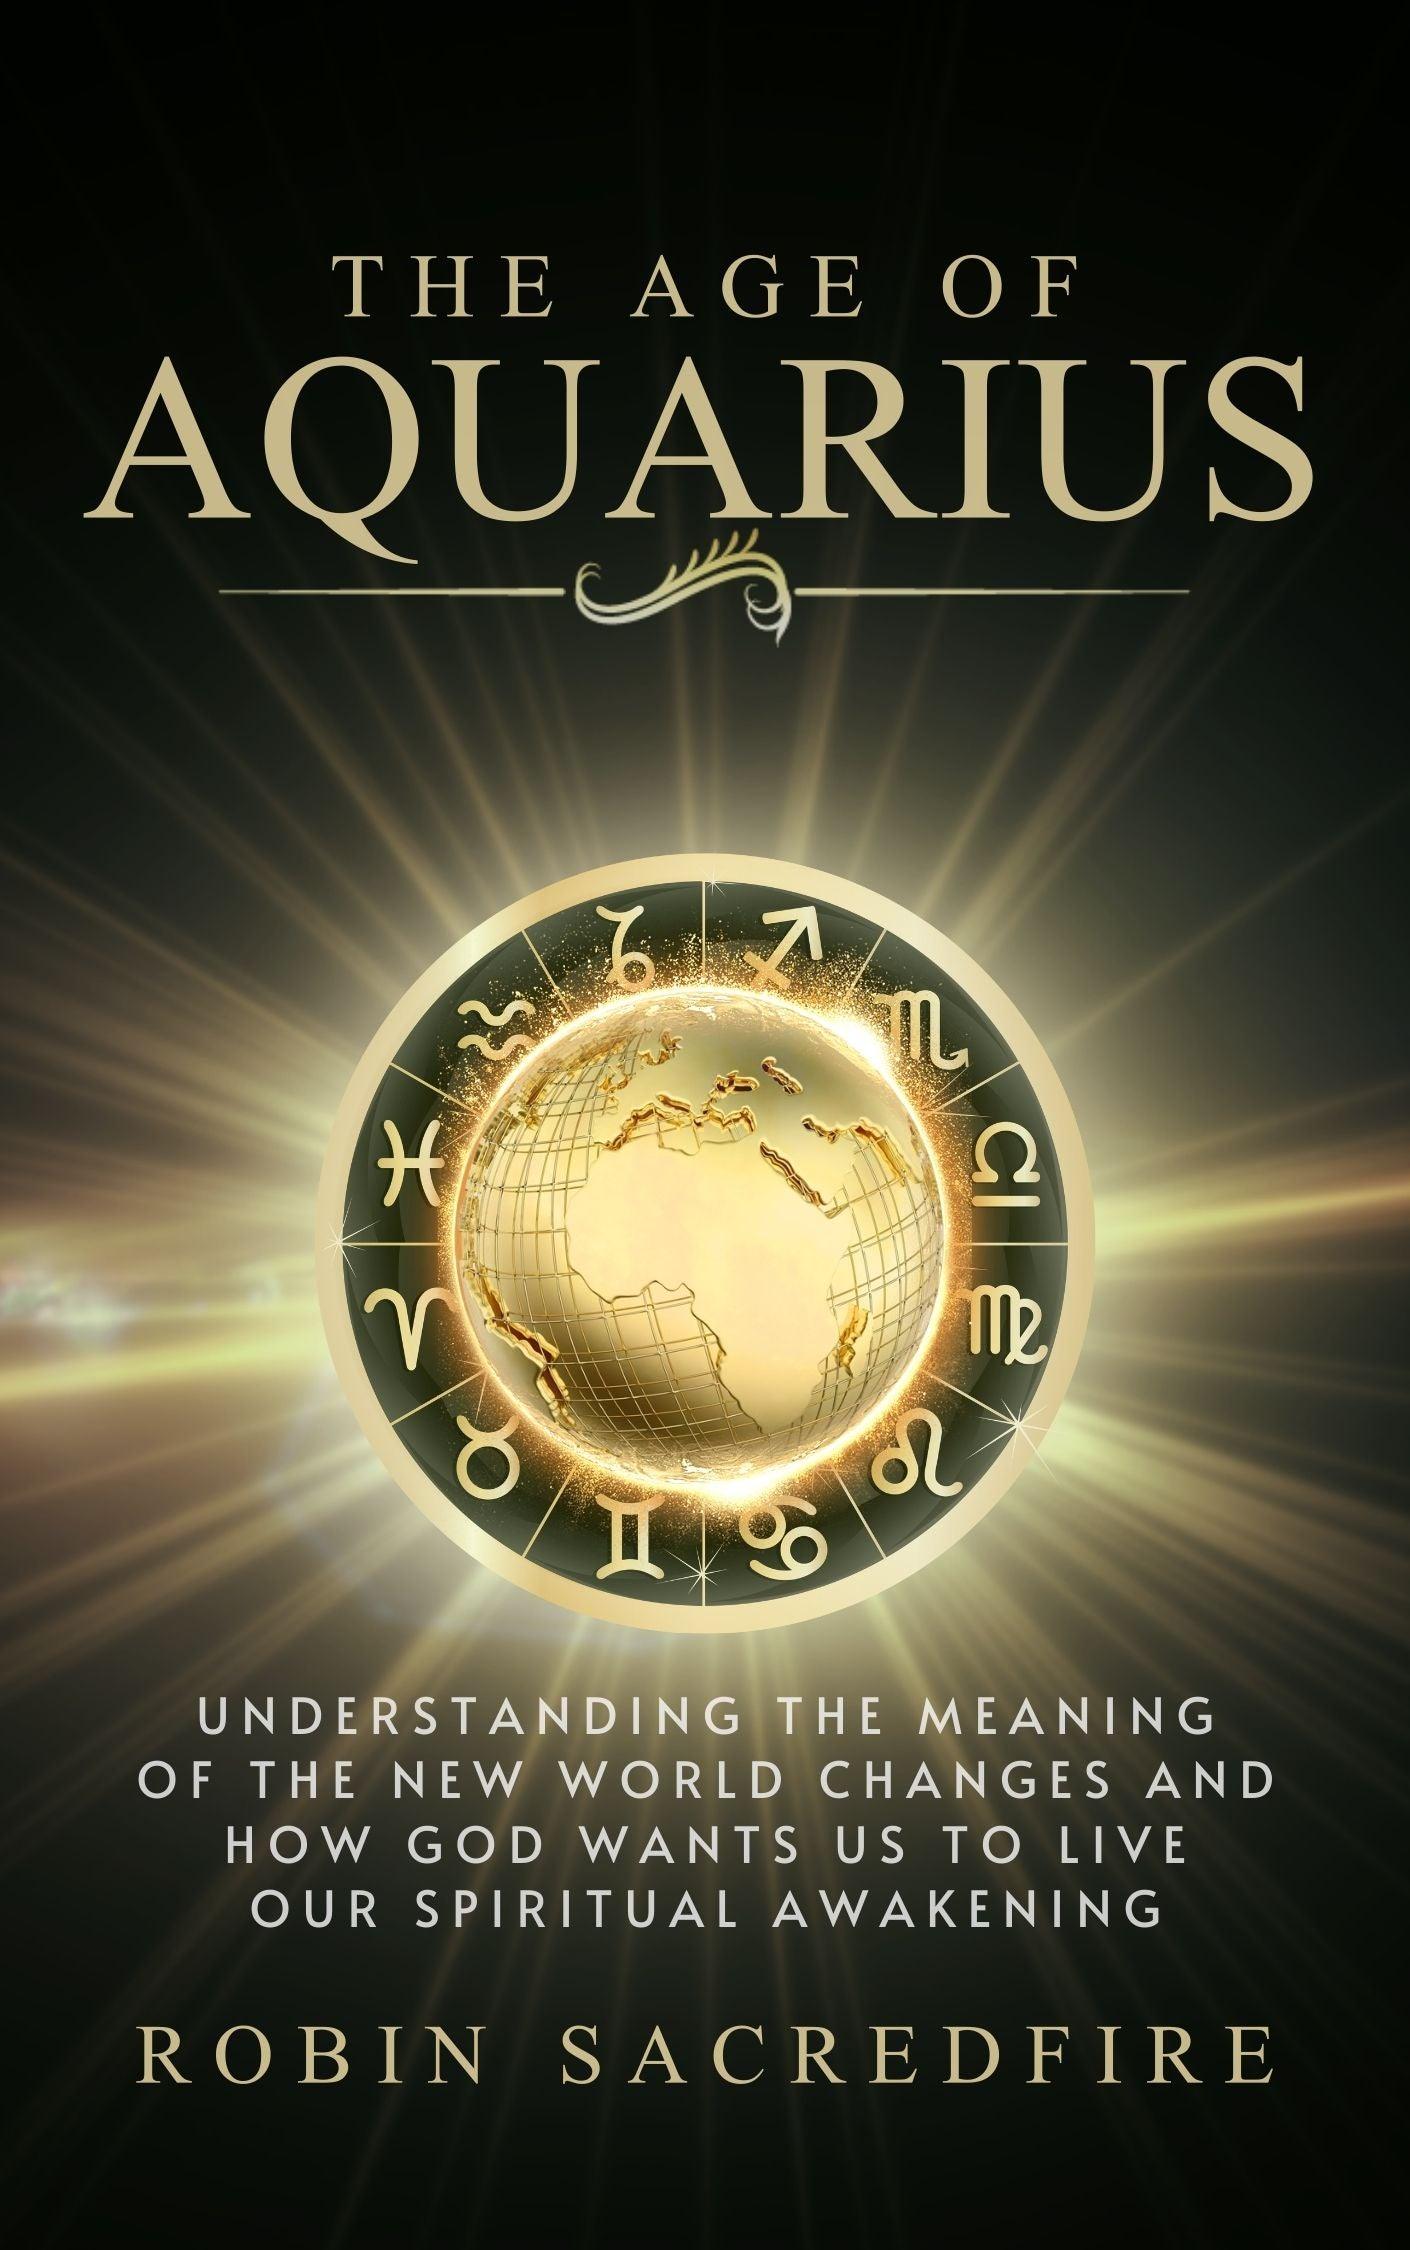 The Age of Aquarius - 22 Lions